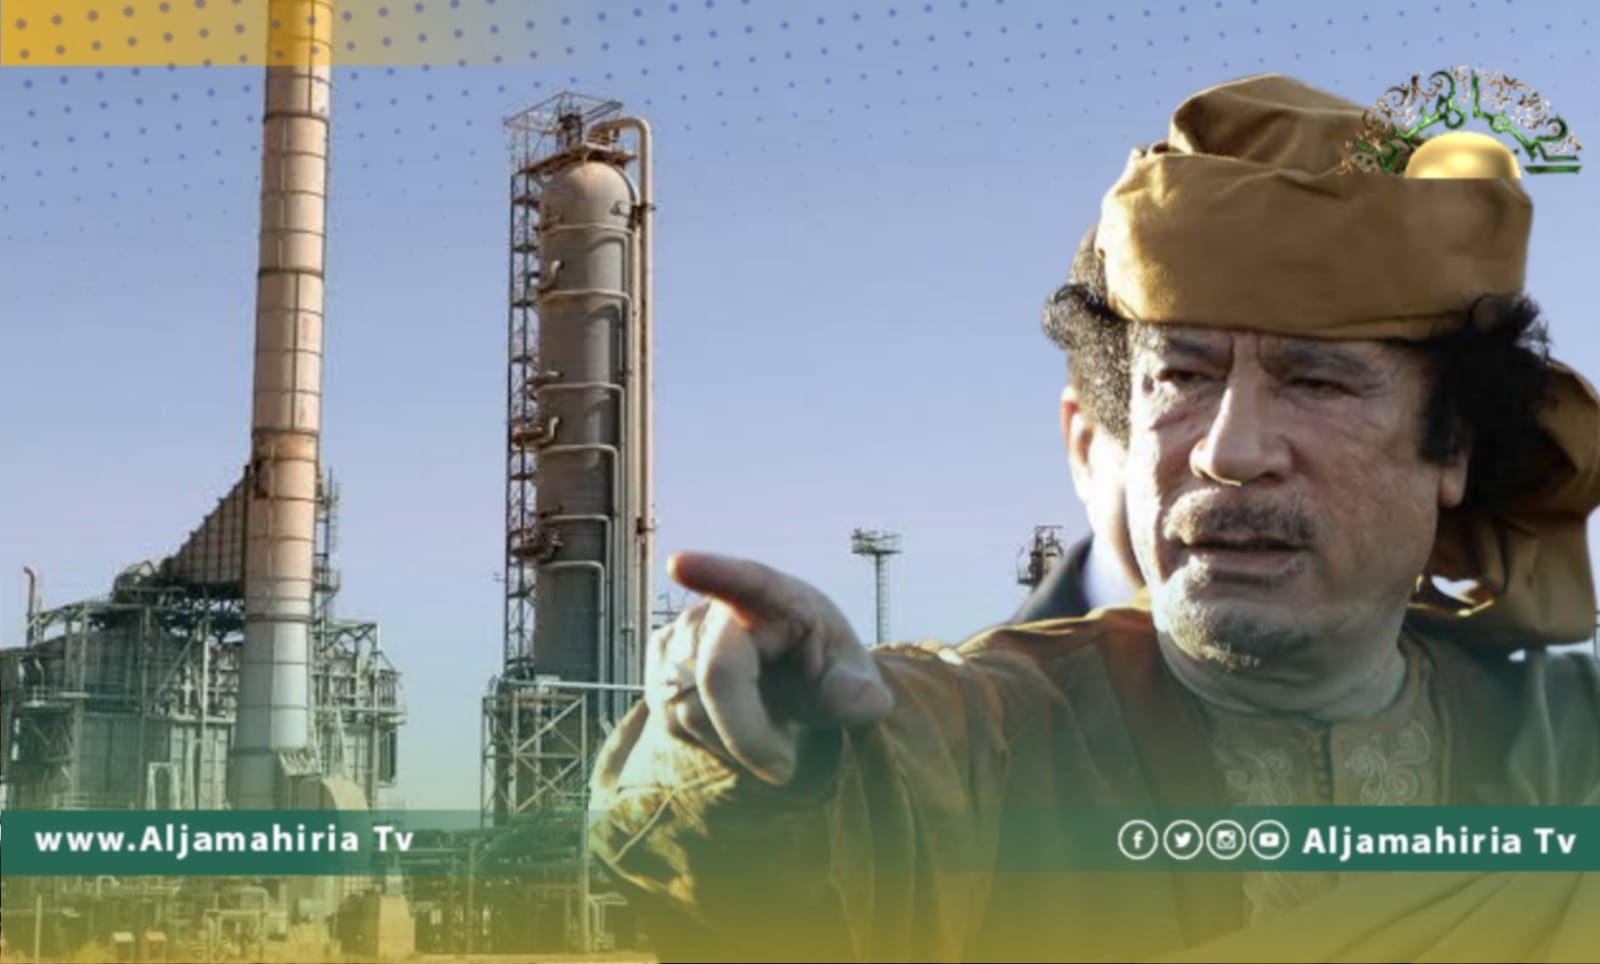 "نيو يوروب": هكذا وظّف "القذافي" النفط لمصلحة ليبيا..وهكذا استخدمته فبراير وحفتر